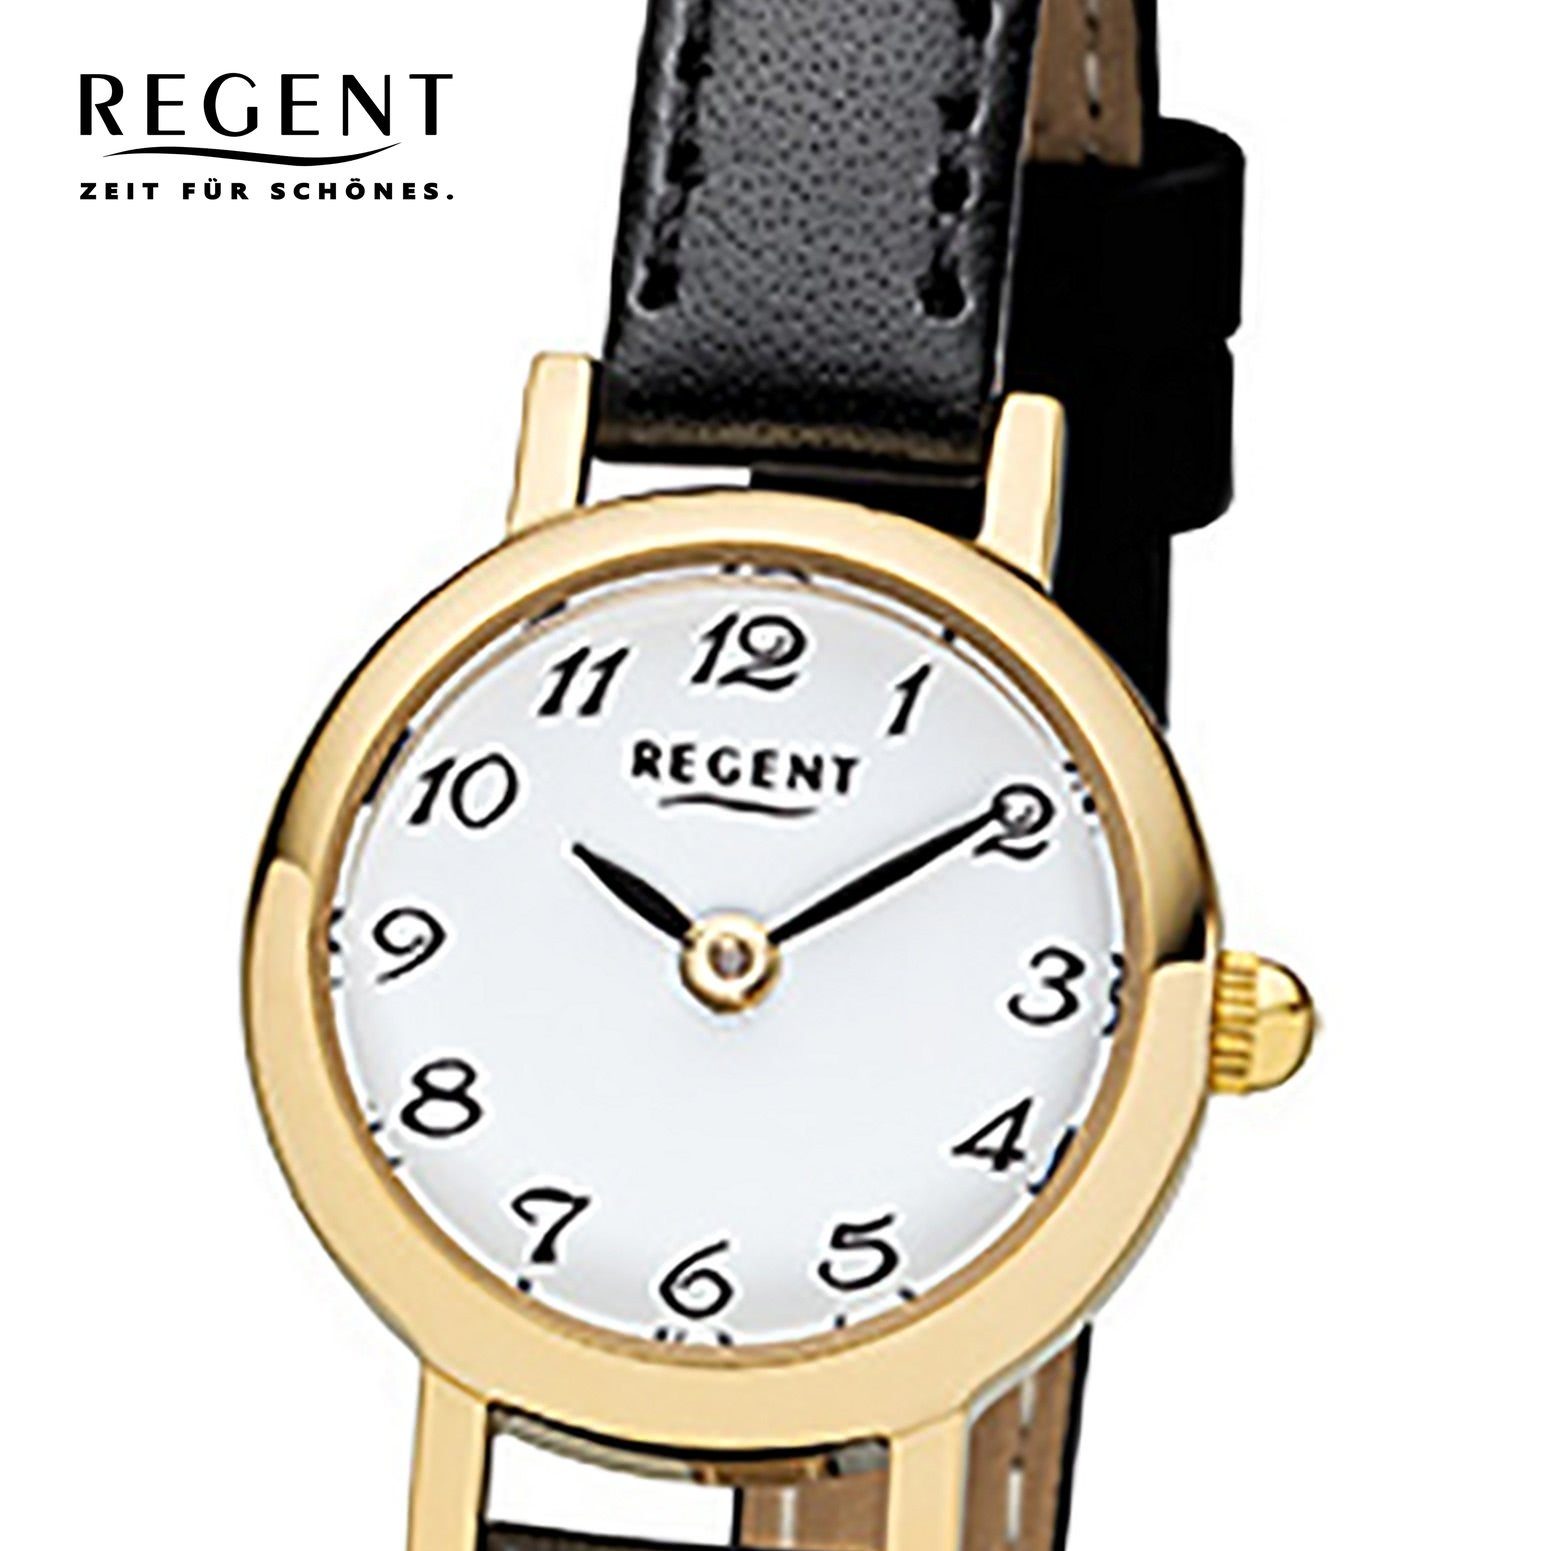 Armbanduhr Regent (ca. klein schwarz rund, Damen-Armbanduhr 20mm), Regent Lederarmband Quarzuhr Damen Analog,